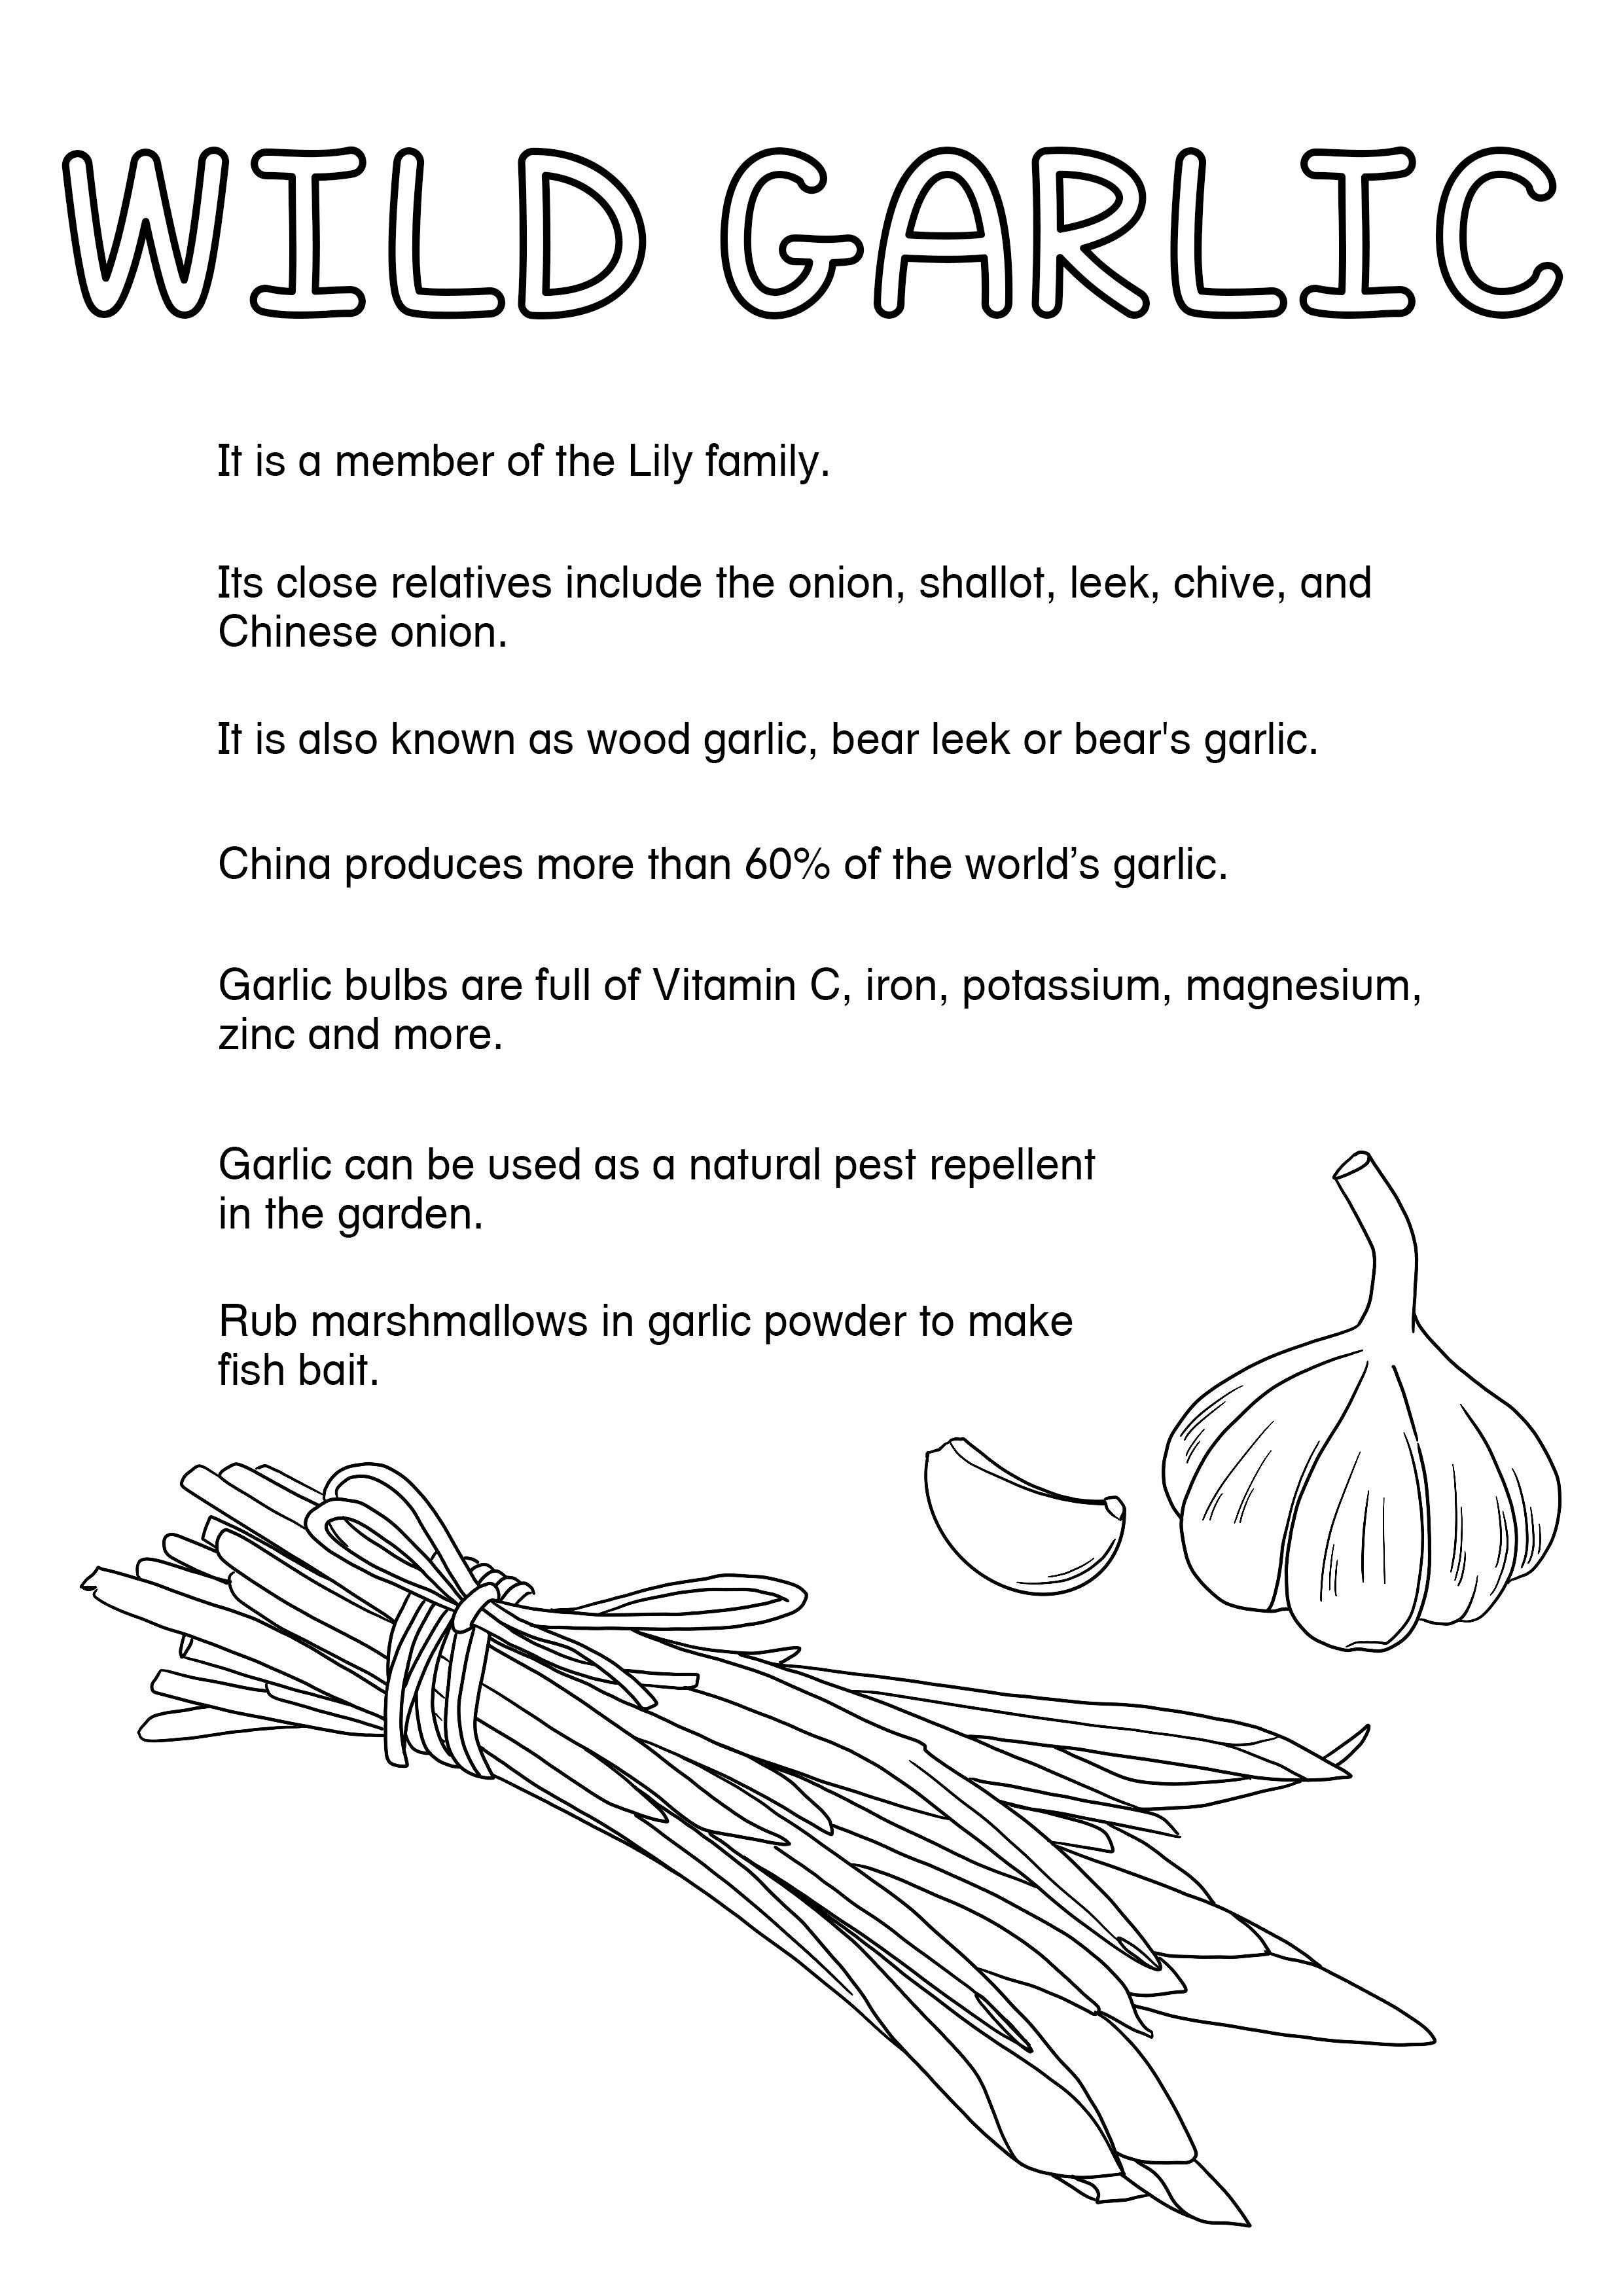 Wild Garlic Pesto1.jpg